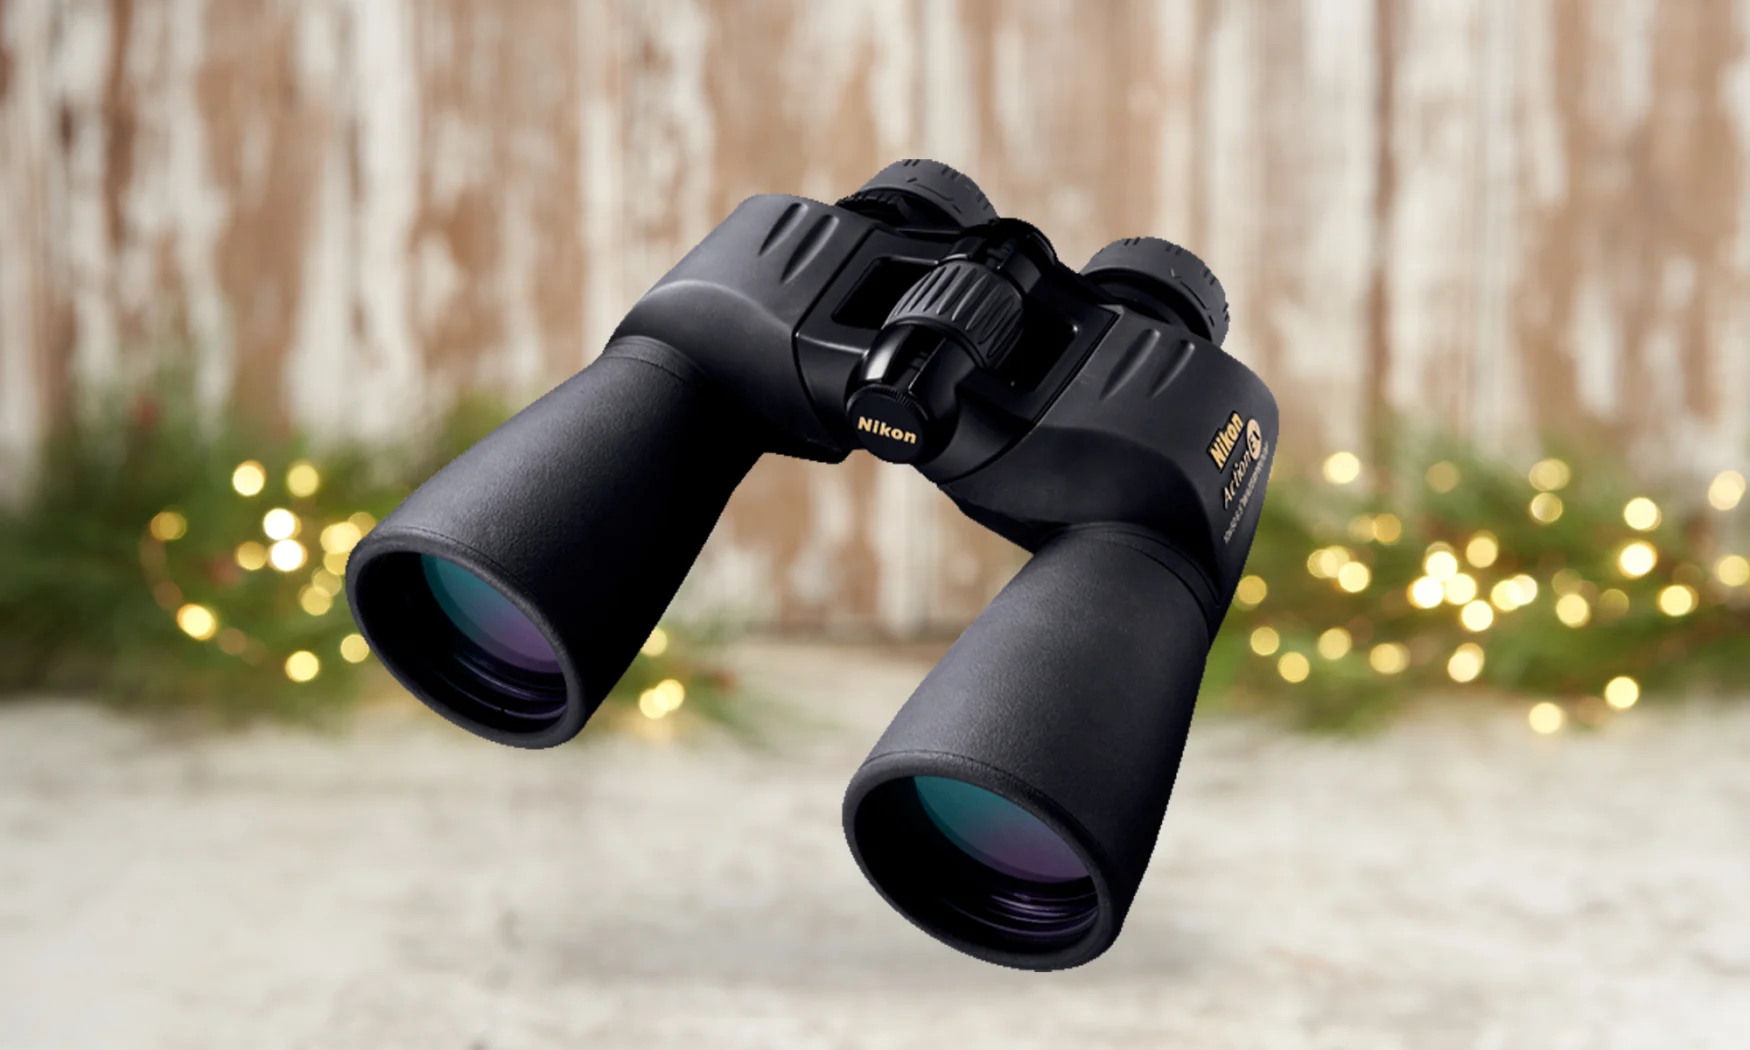 Nikon 7245 Action Binoculars